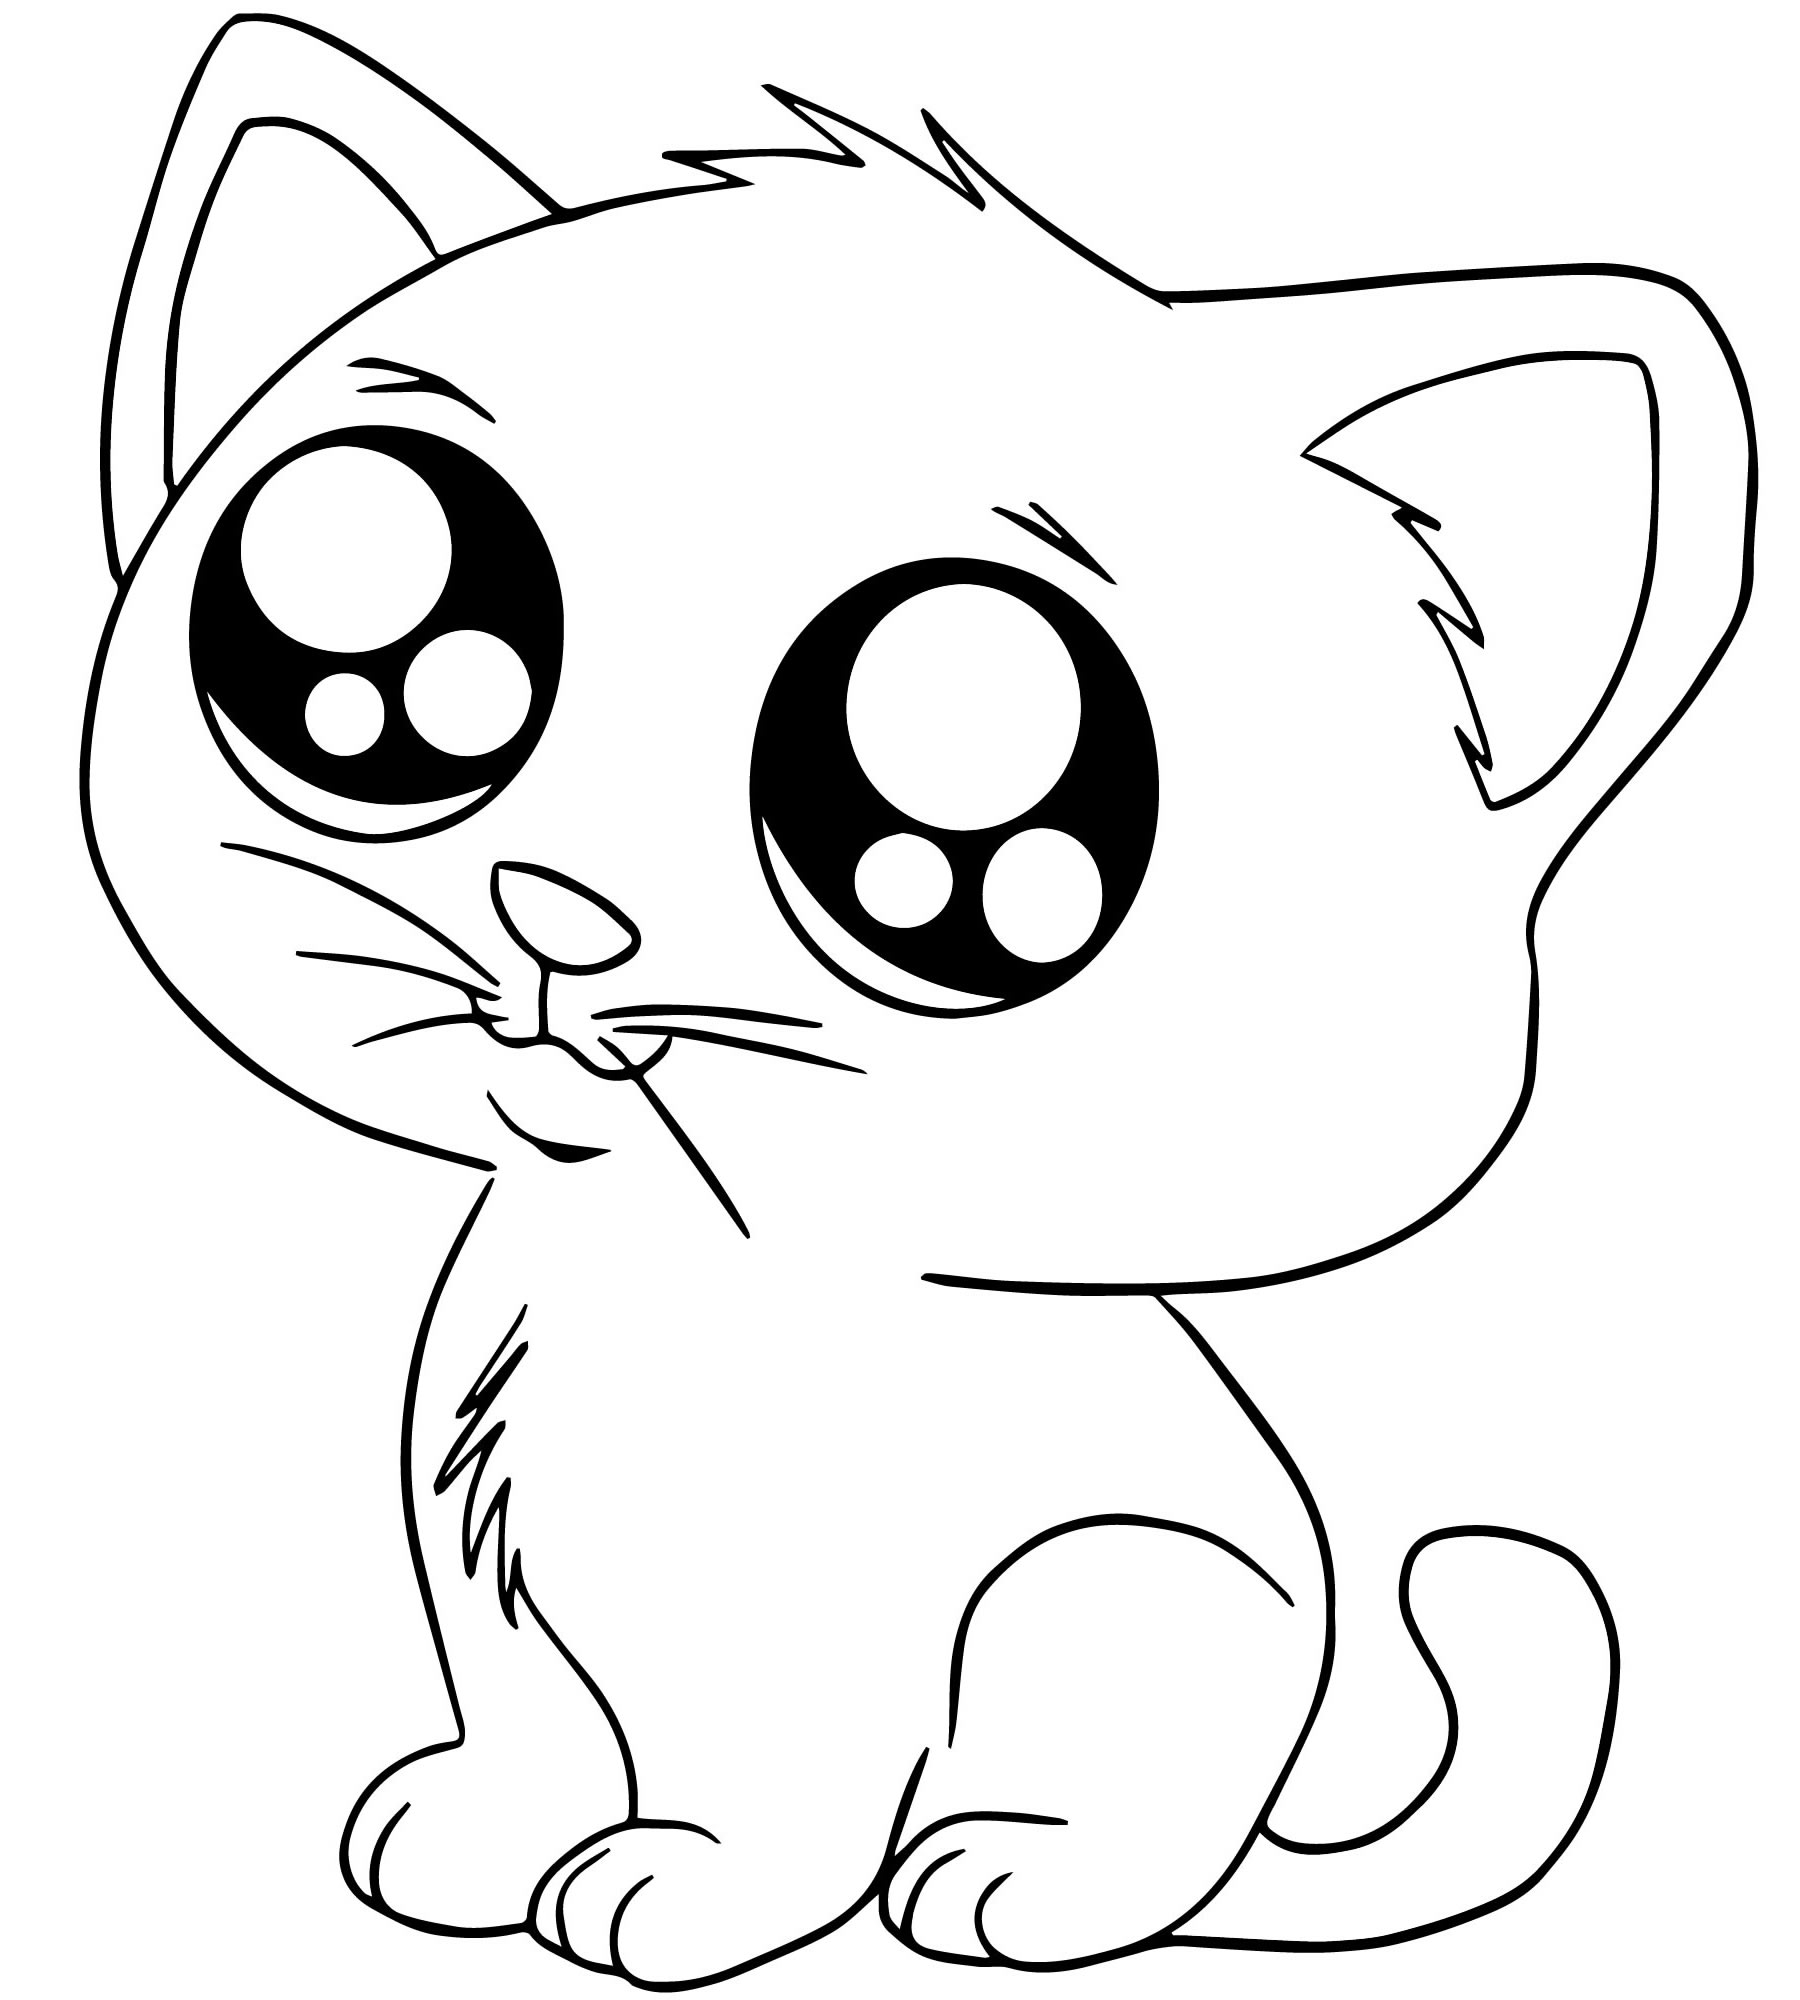 Красивый рисунок на а4. Раскраска. Котики. Рисунок кота для срисовки. Раскраска маленькие котята. Милые кошечки раскраска.